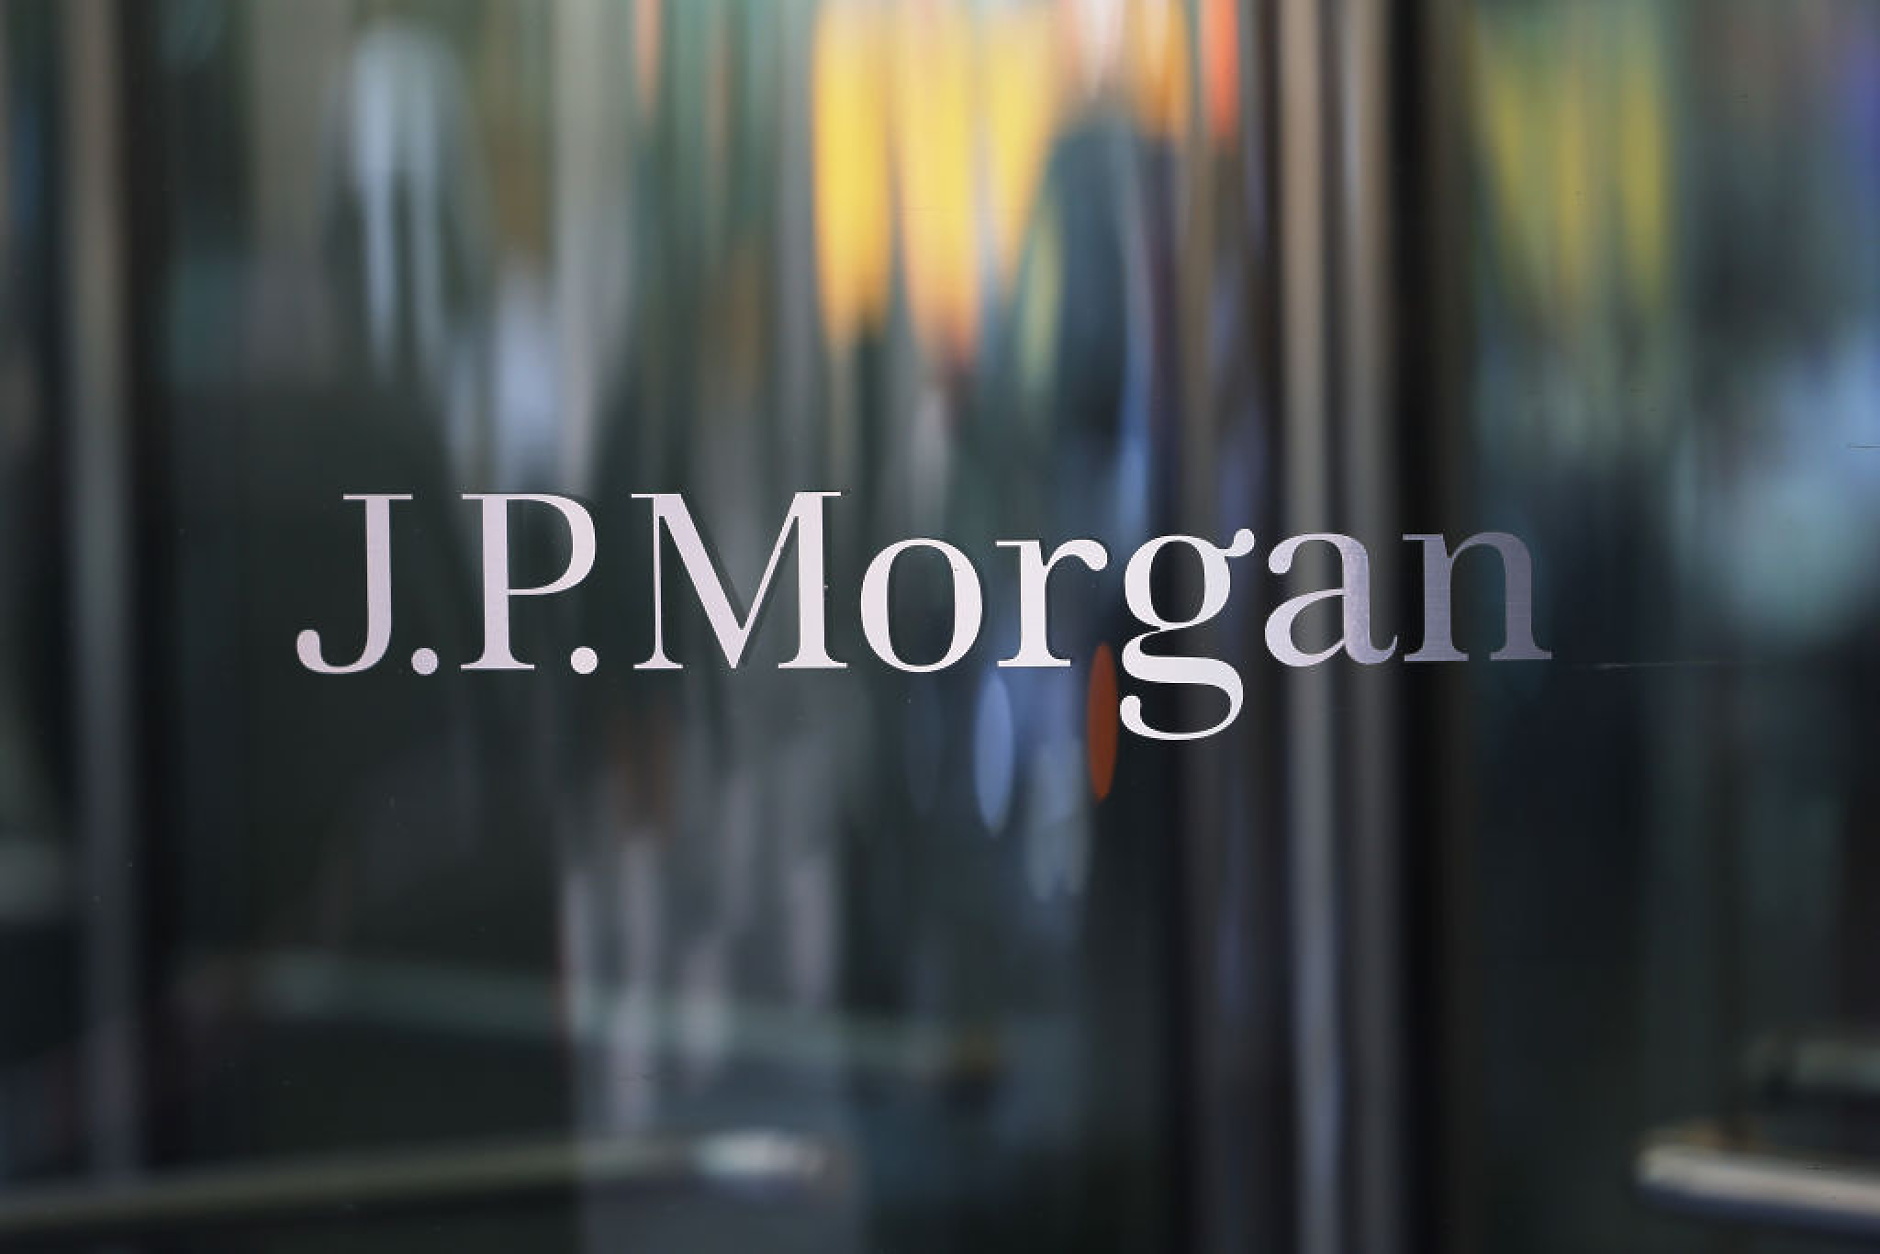 JP Morgan ще плати 290 млн. долара за уреждане на дело, заведено от жертви на Джефри Епстийн